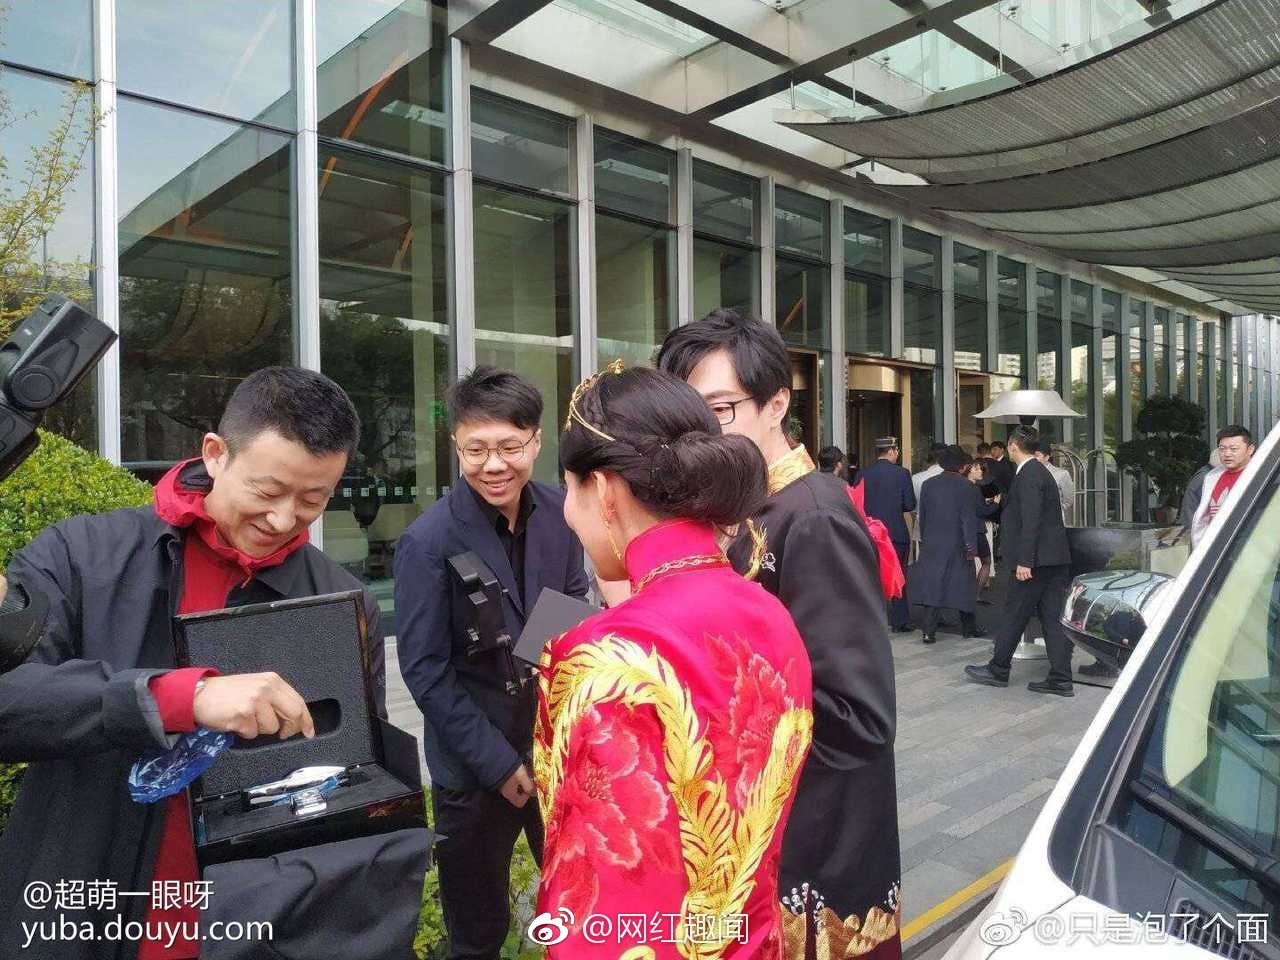 Đám cưới hot nhất hôm nay: Thiếu gia giàu nhất Trung Quốc làm phù rể, tặng nóng cô dâu chú rể 1 chiếc Rolls Royce - Ảnh 8.